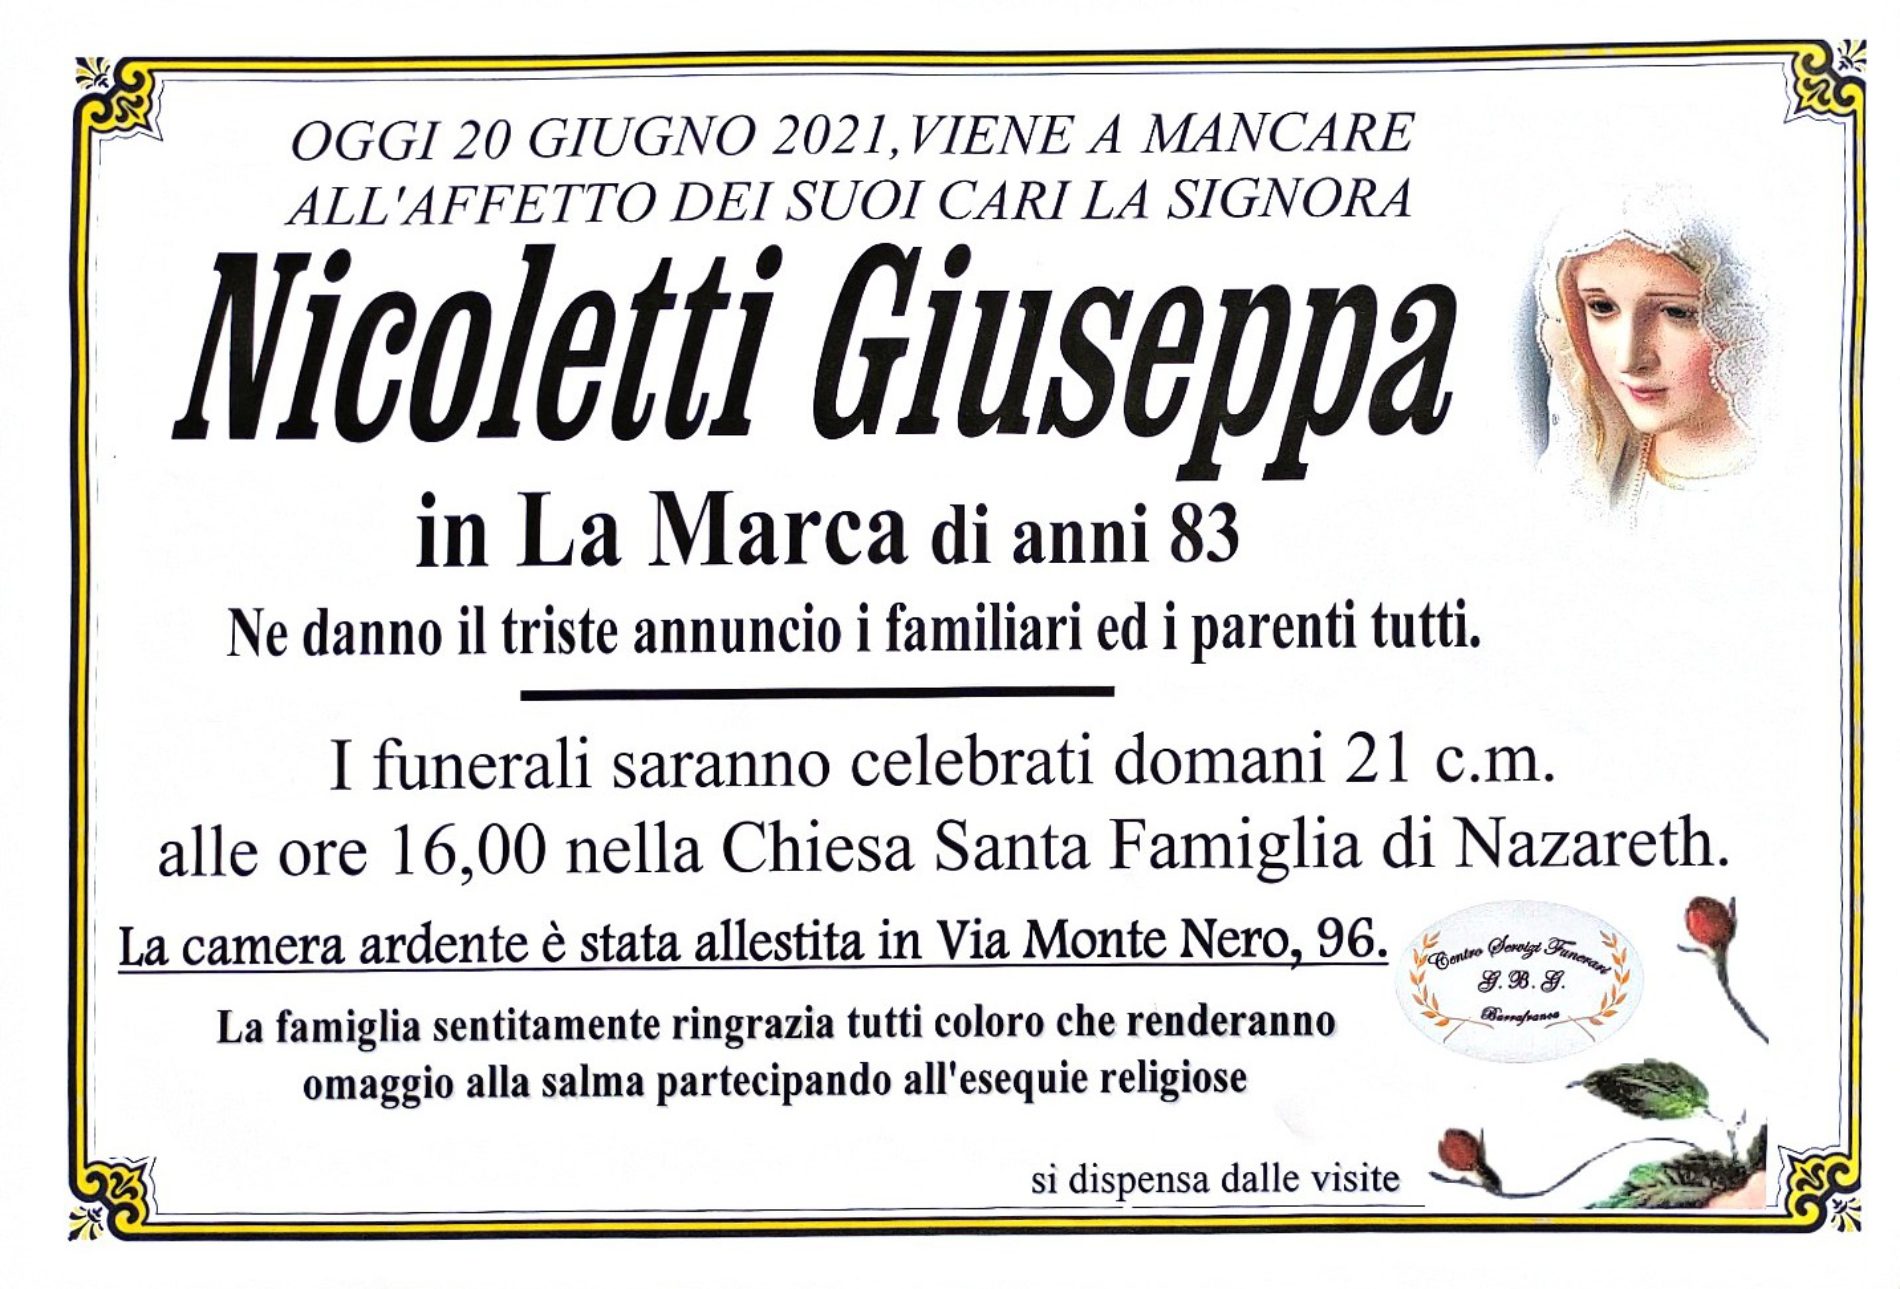 Annuncio servizi funerari agenzia G.B.G. sig.ra Nicoletti Giuseppa in La Marca di anni 83